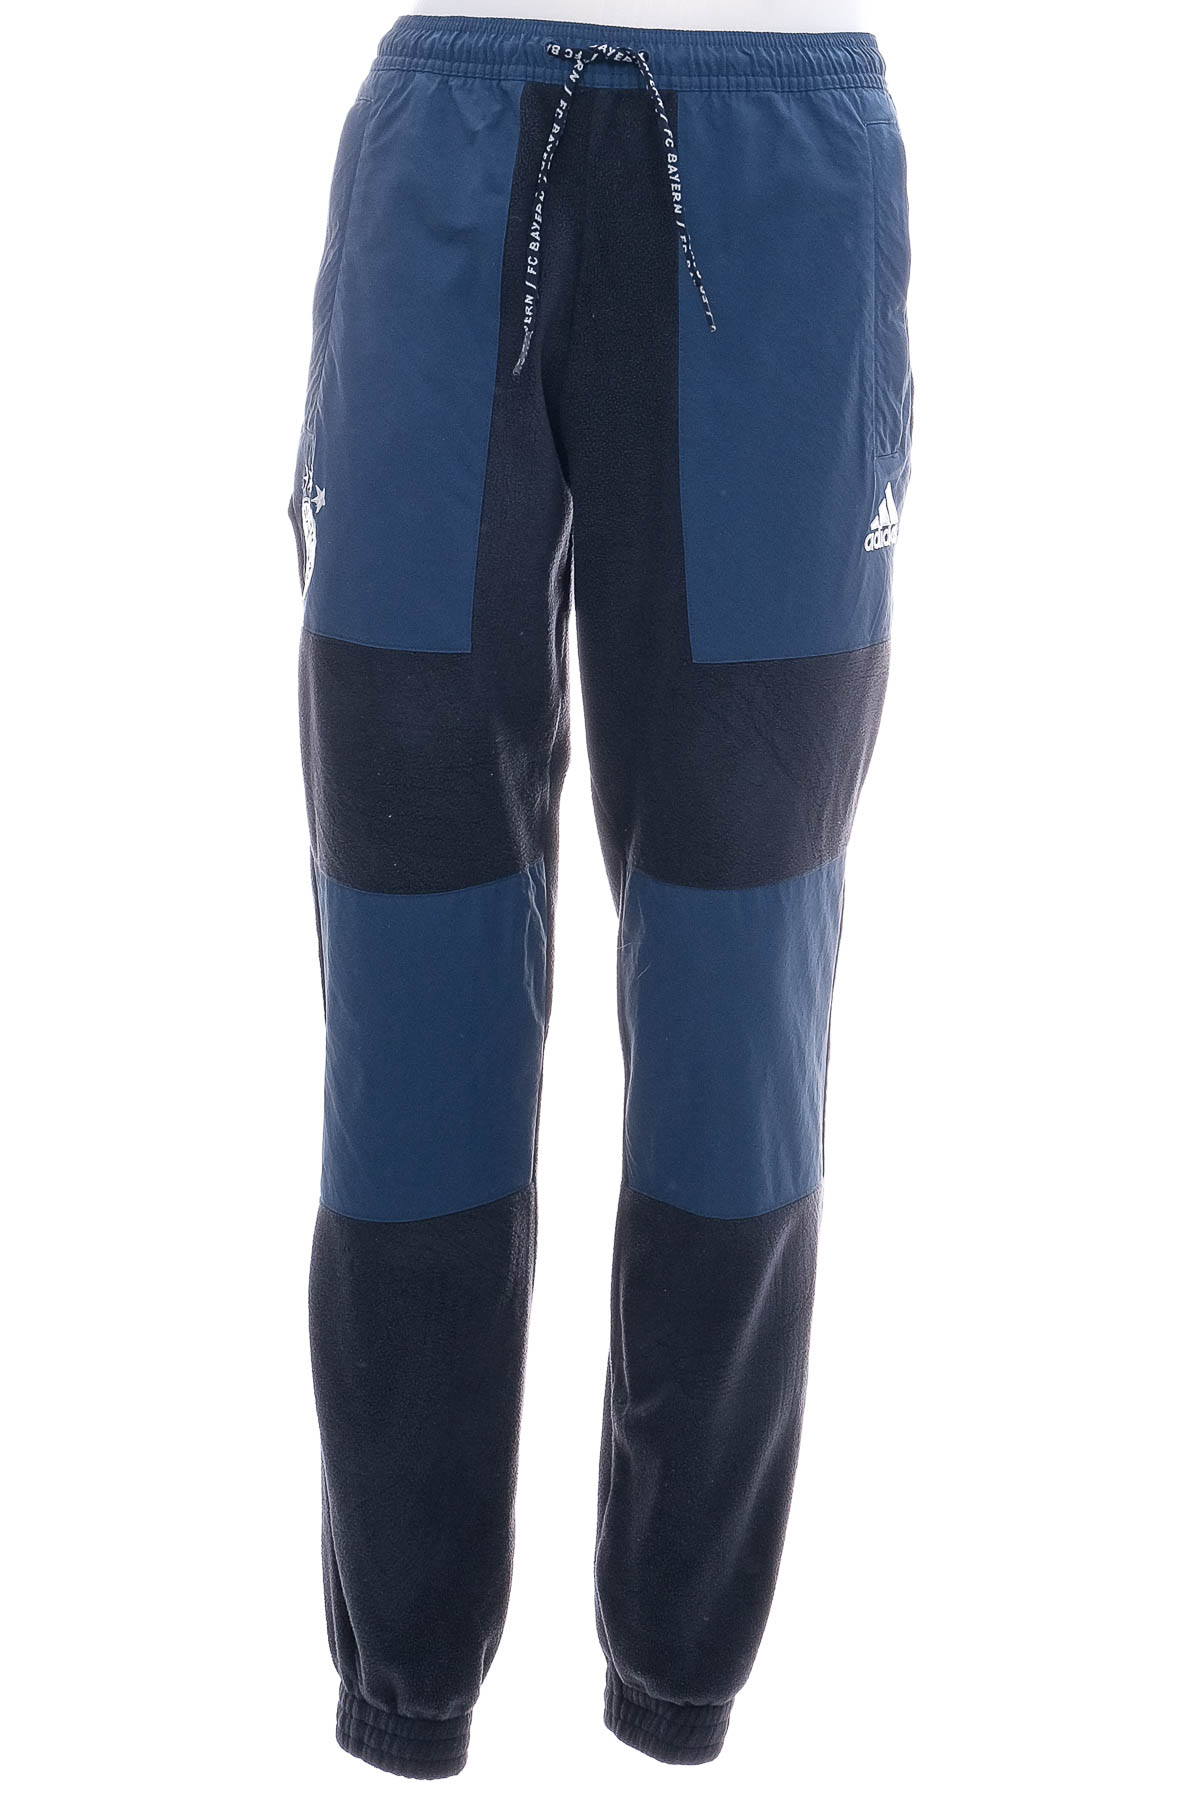 Męskie spodnie polarowe - Adidas - 0